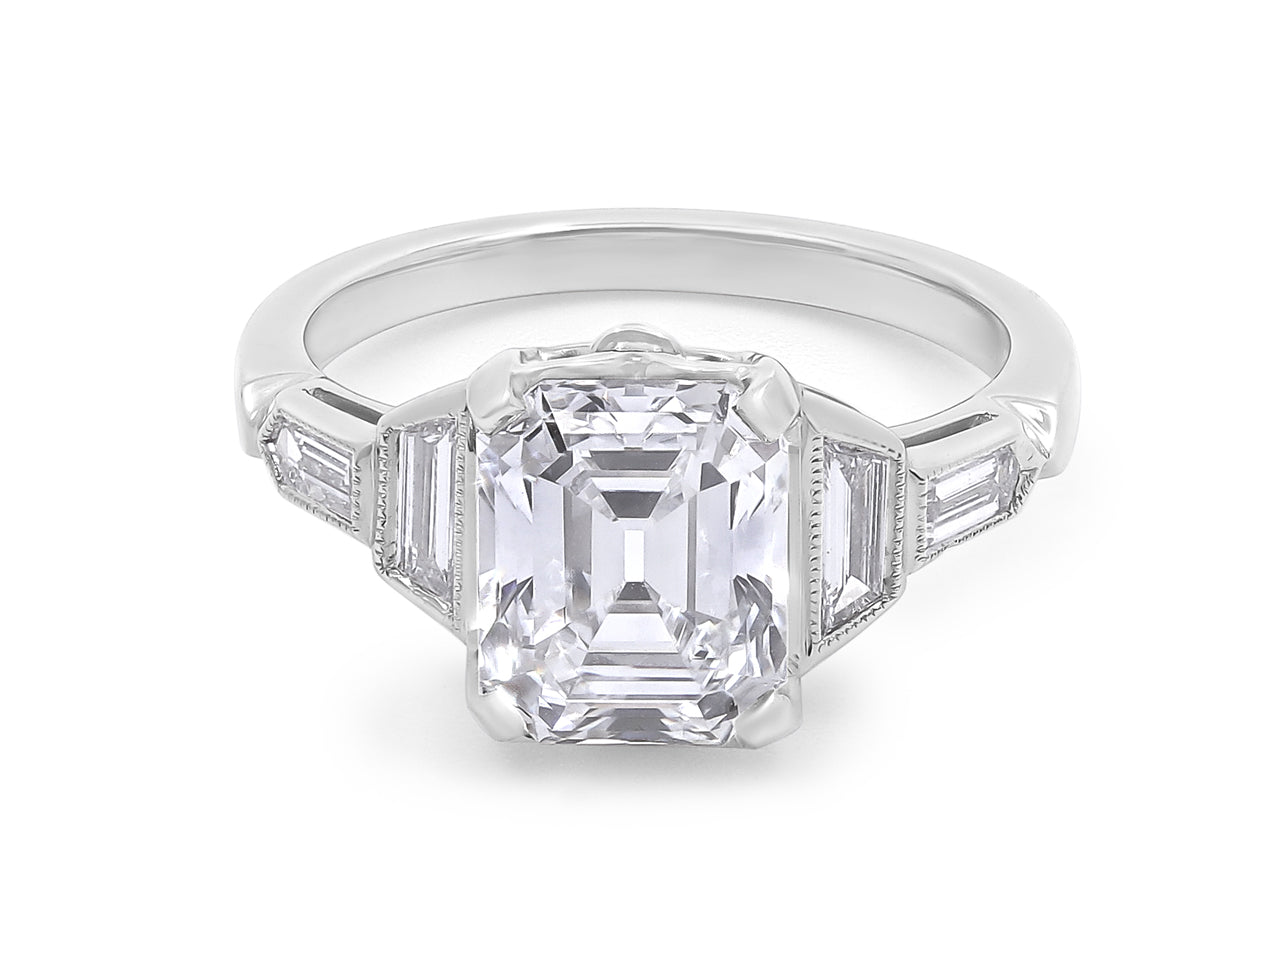 Asscher Cut Diamond Ring, 3.02 carats D/VVS-2, in Platinum